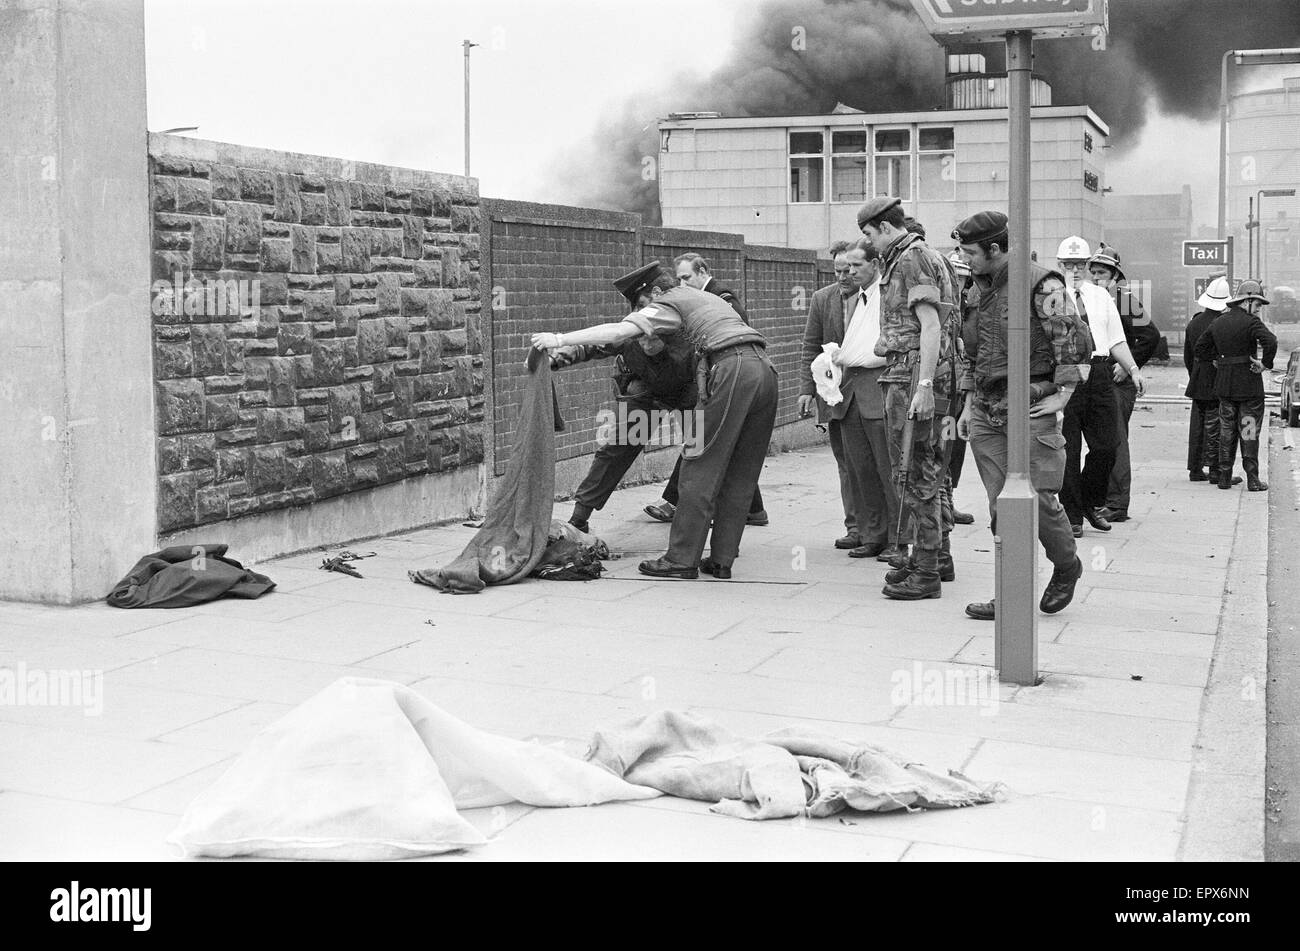 Vendredi sanglant est le nom donné à la bombe perpétrés par l'Armée républicaine irlandaise provisoire (IRA) à Belfast le 21 juillet 1972. Vingt-deux bombes ont explosé dans l'espace de 80 minutes, tuant neuf personnes (dont deux soldats britanniques) et en blessant 130. À Banque D'Images